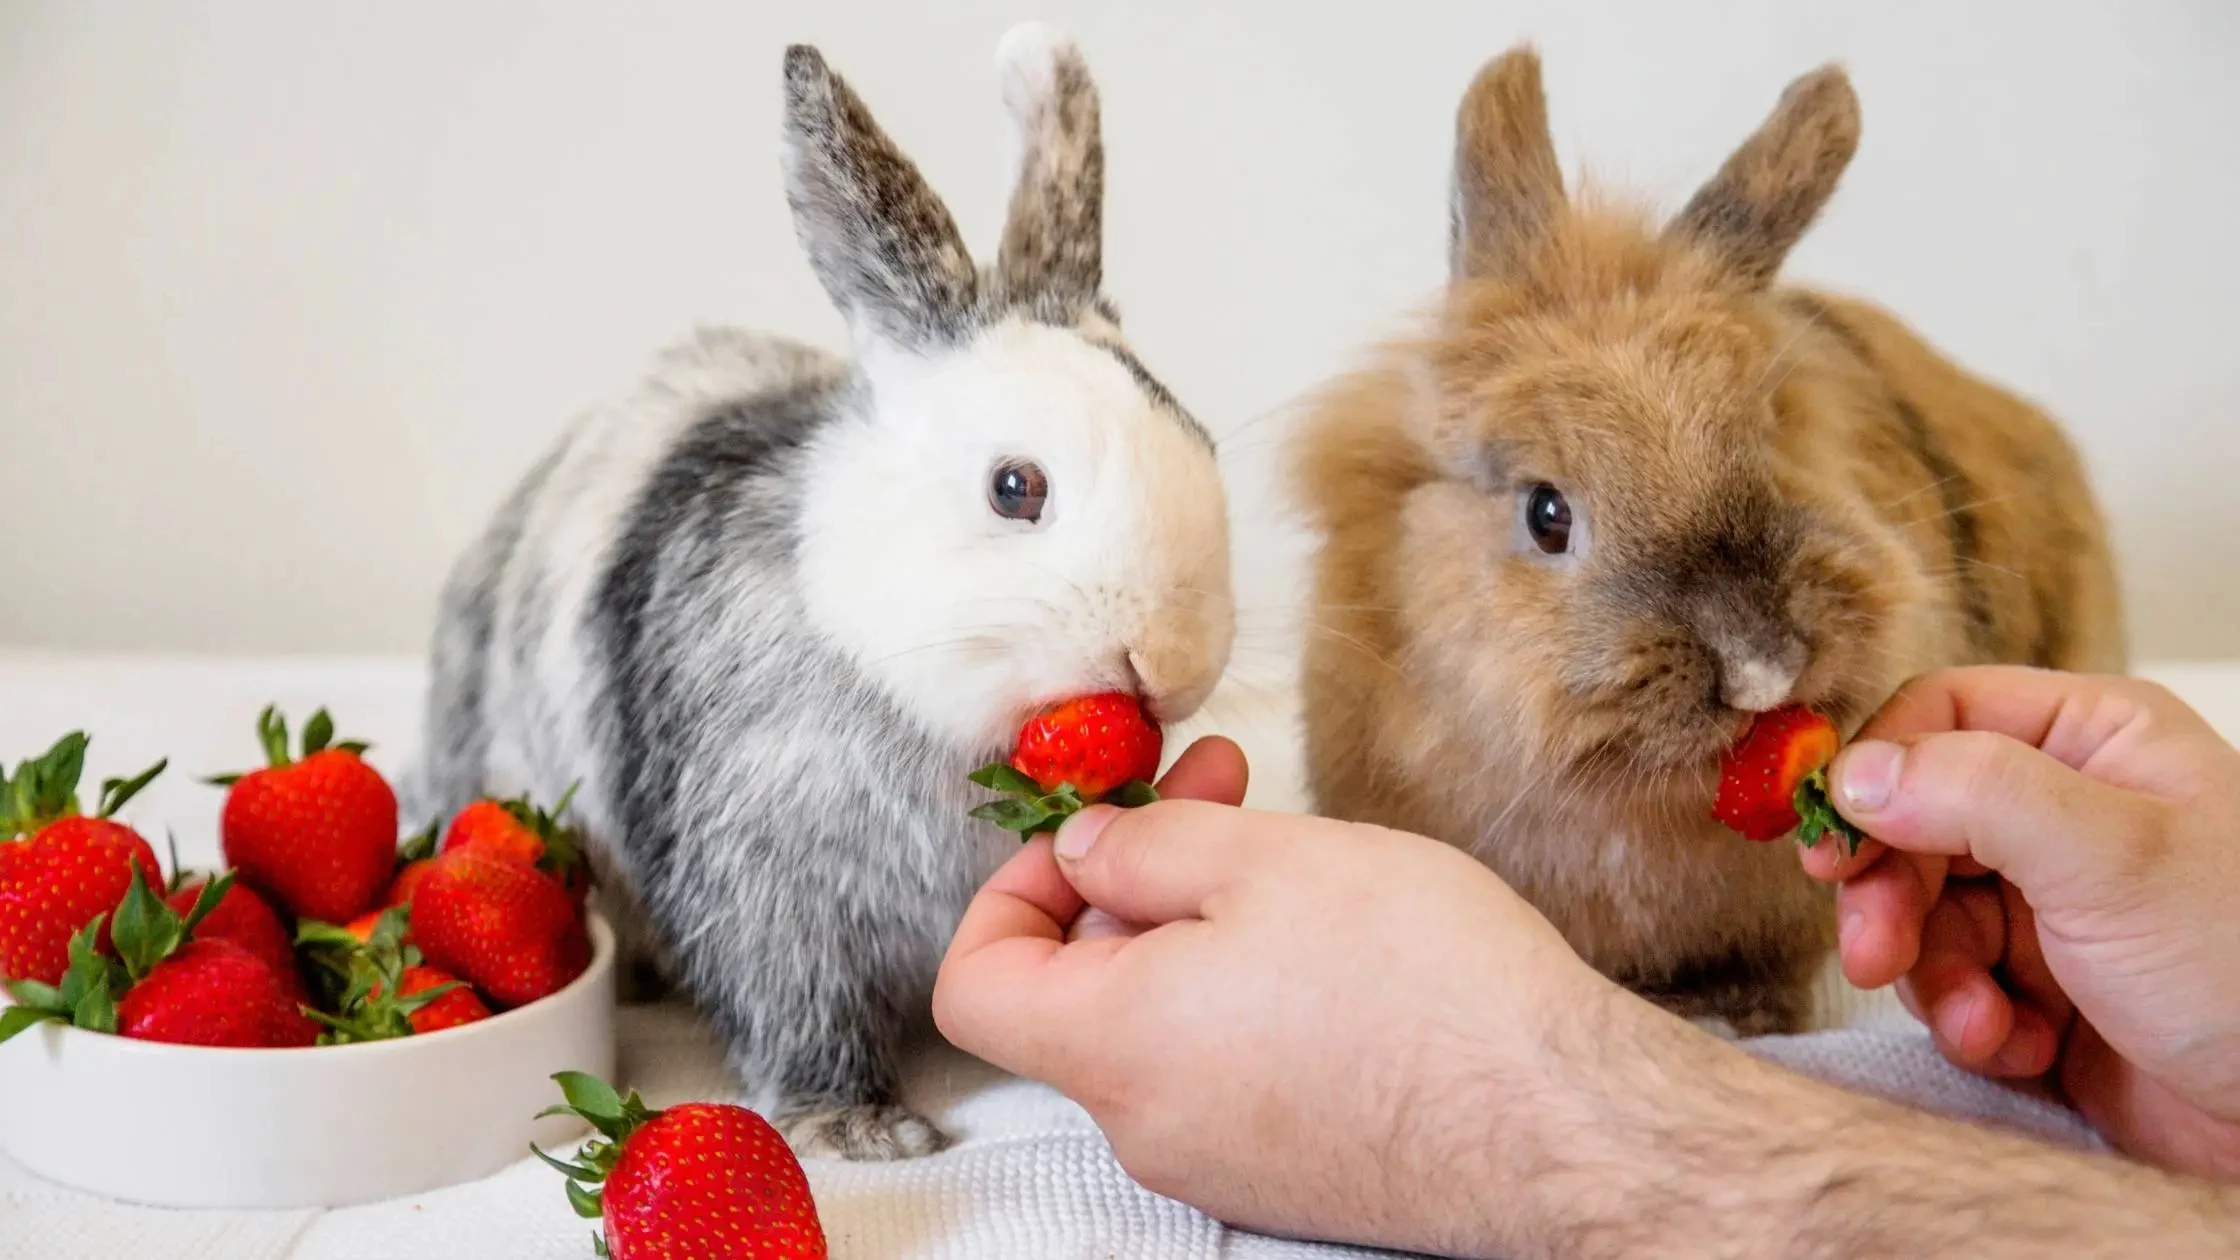 do bunnies eat strawberries